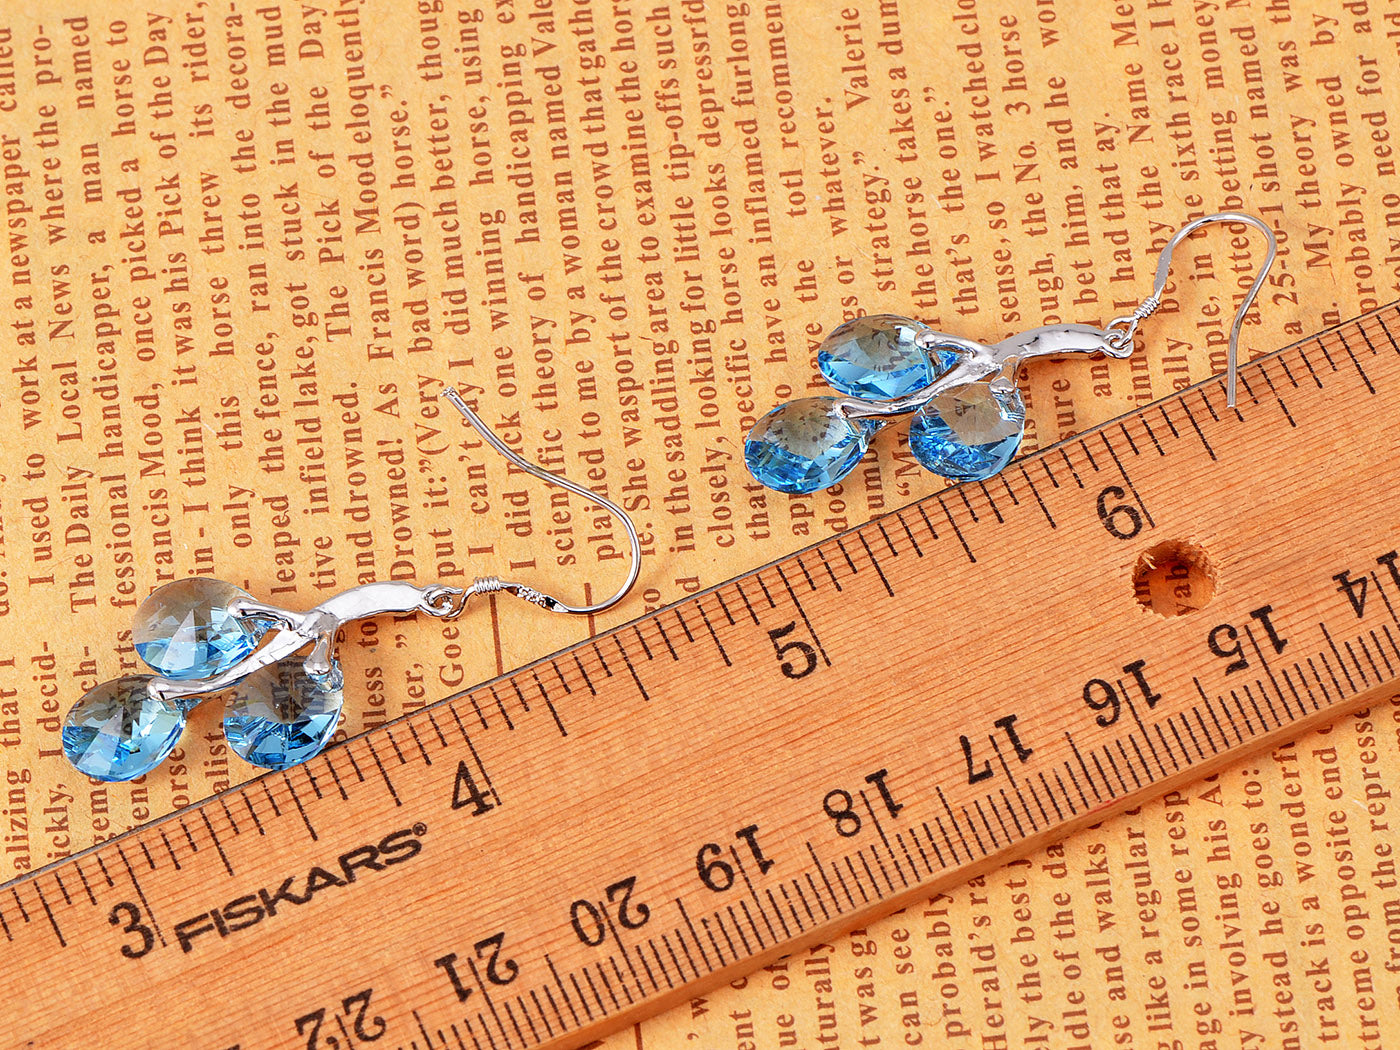 Swarovski Crystal Element Silver Blue Teardrop Vine Fish Hook Dangle Earrings